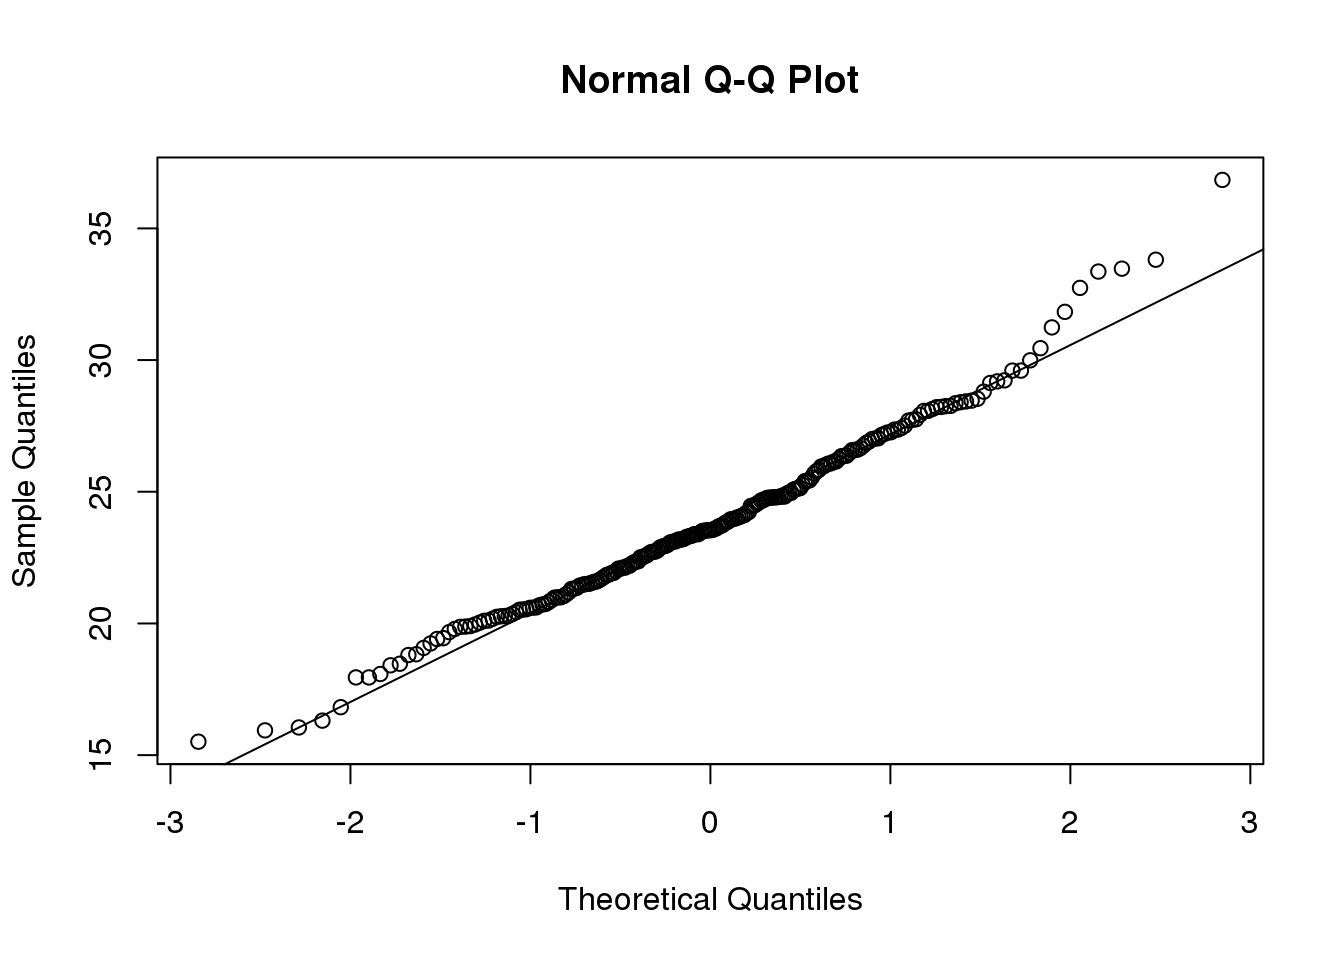 Quantile-quantile of original data compared to theoretical quantile distribution.